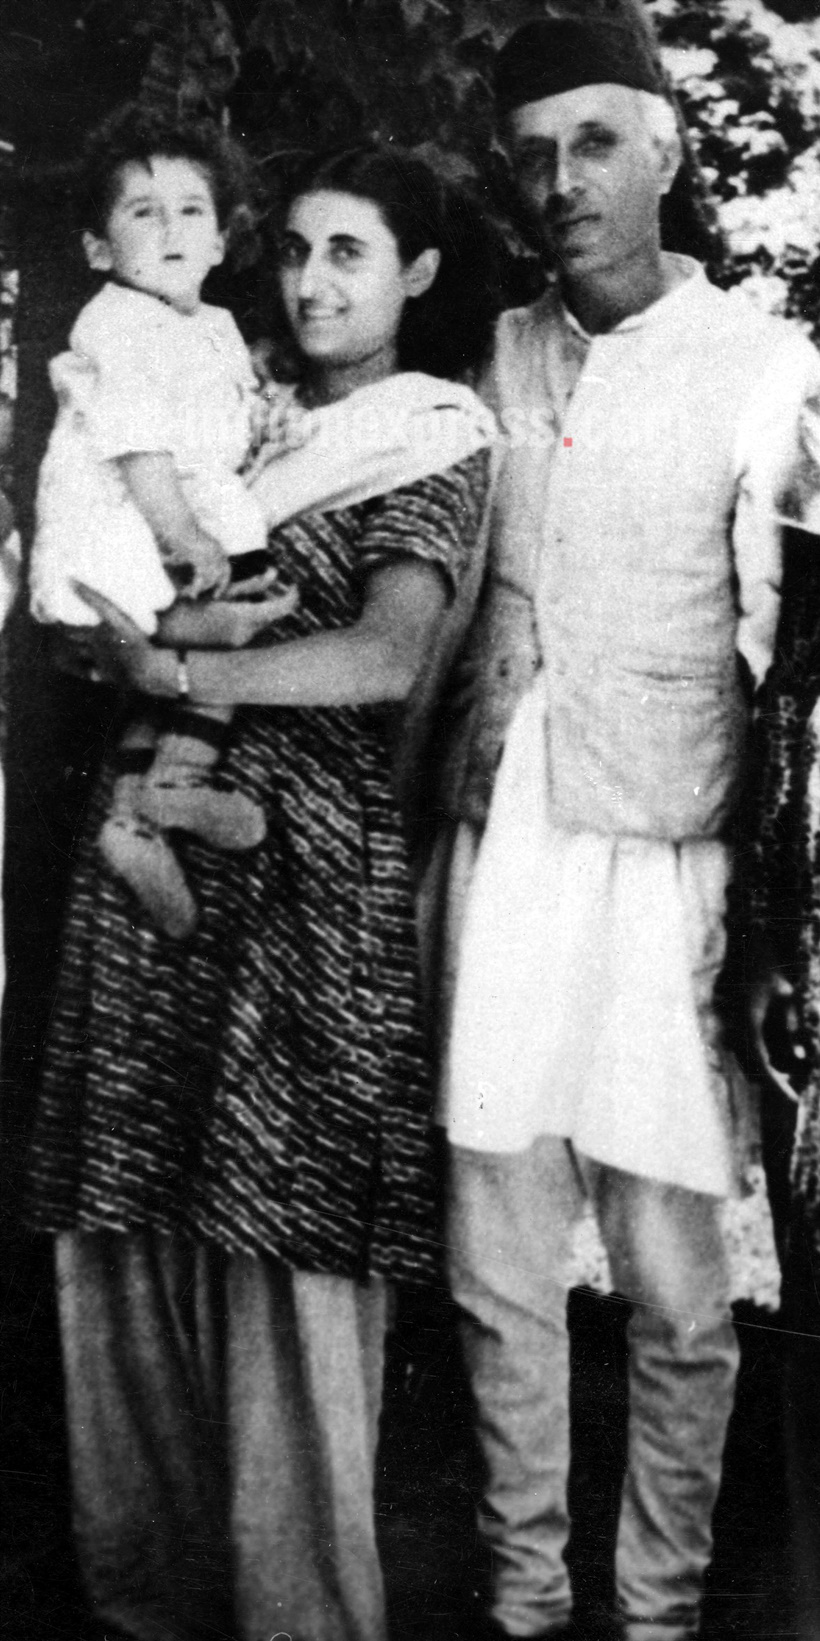 इंदिरा गांधी, त्यांचे बाळ आणि जवाहरलाल नेहरु या छायाचित्रात दिसतात.